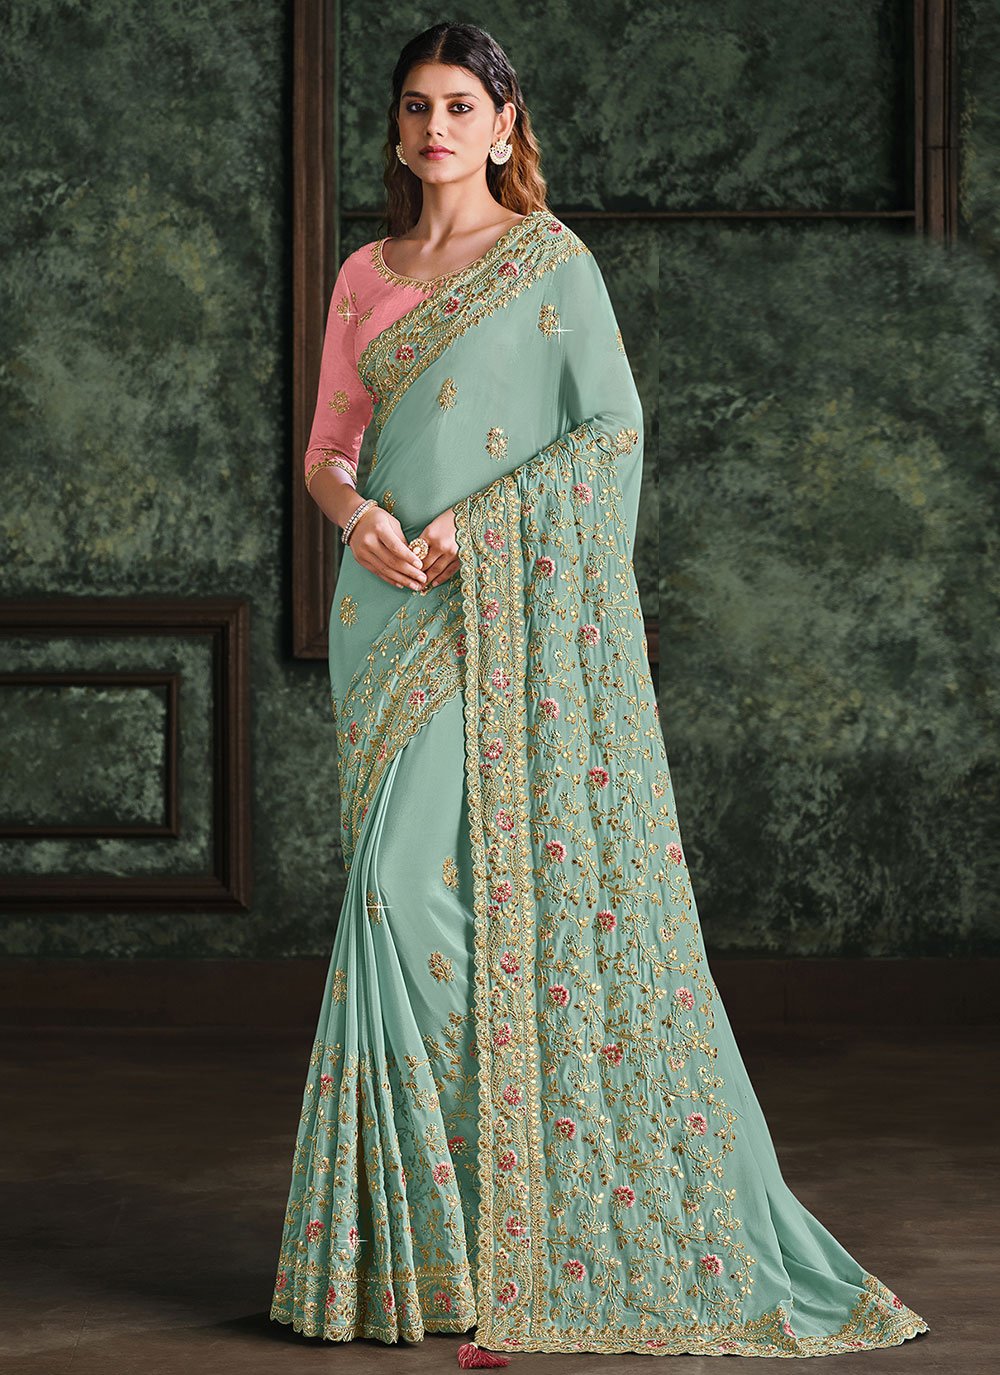 2023 Wedding sarees collection 2021, Kanchipuram sarees, south indian bridal  saree designs - YouTube